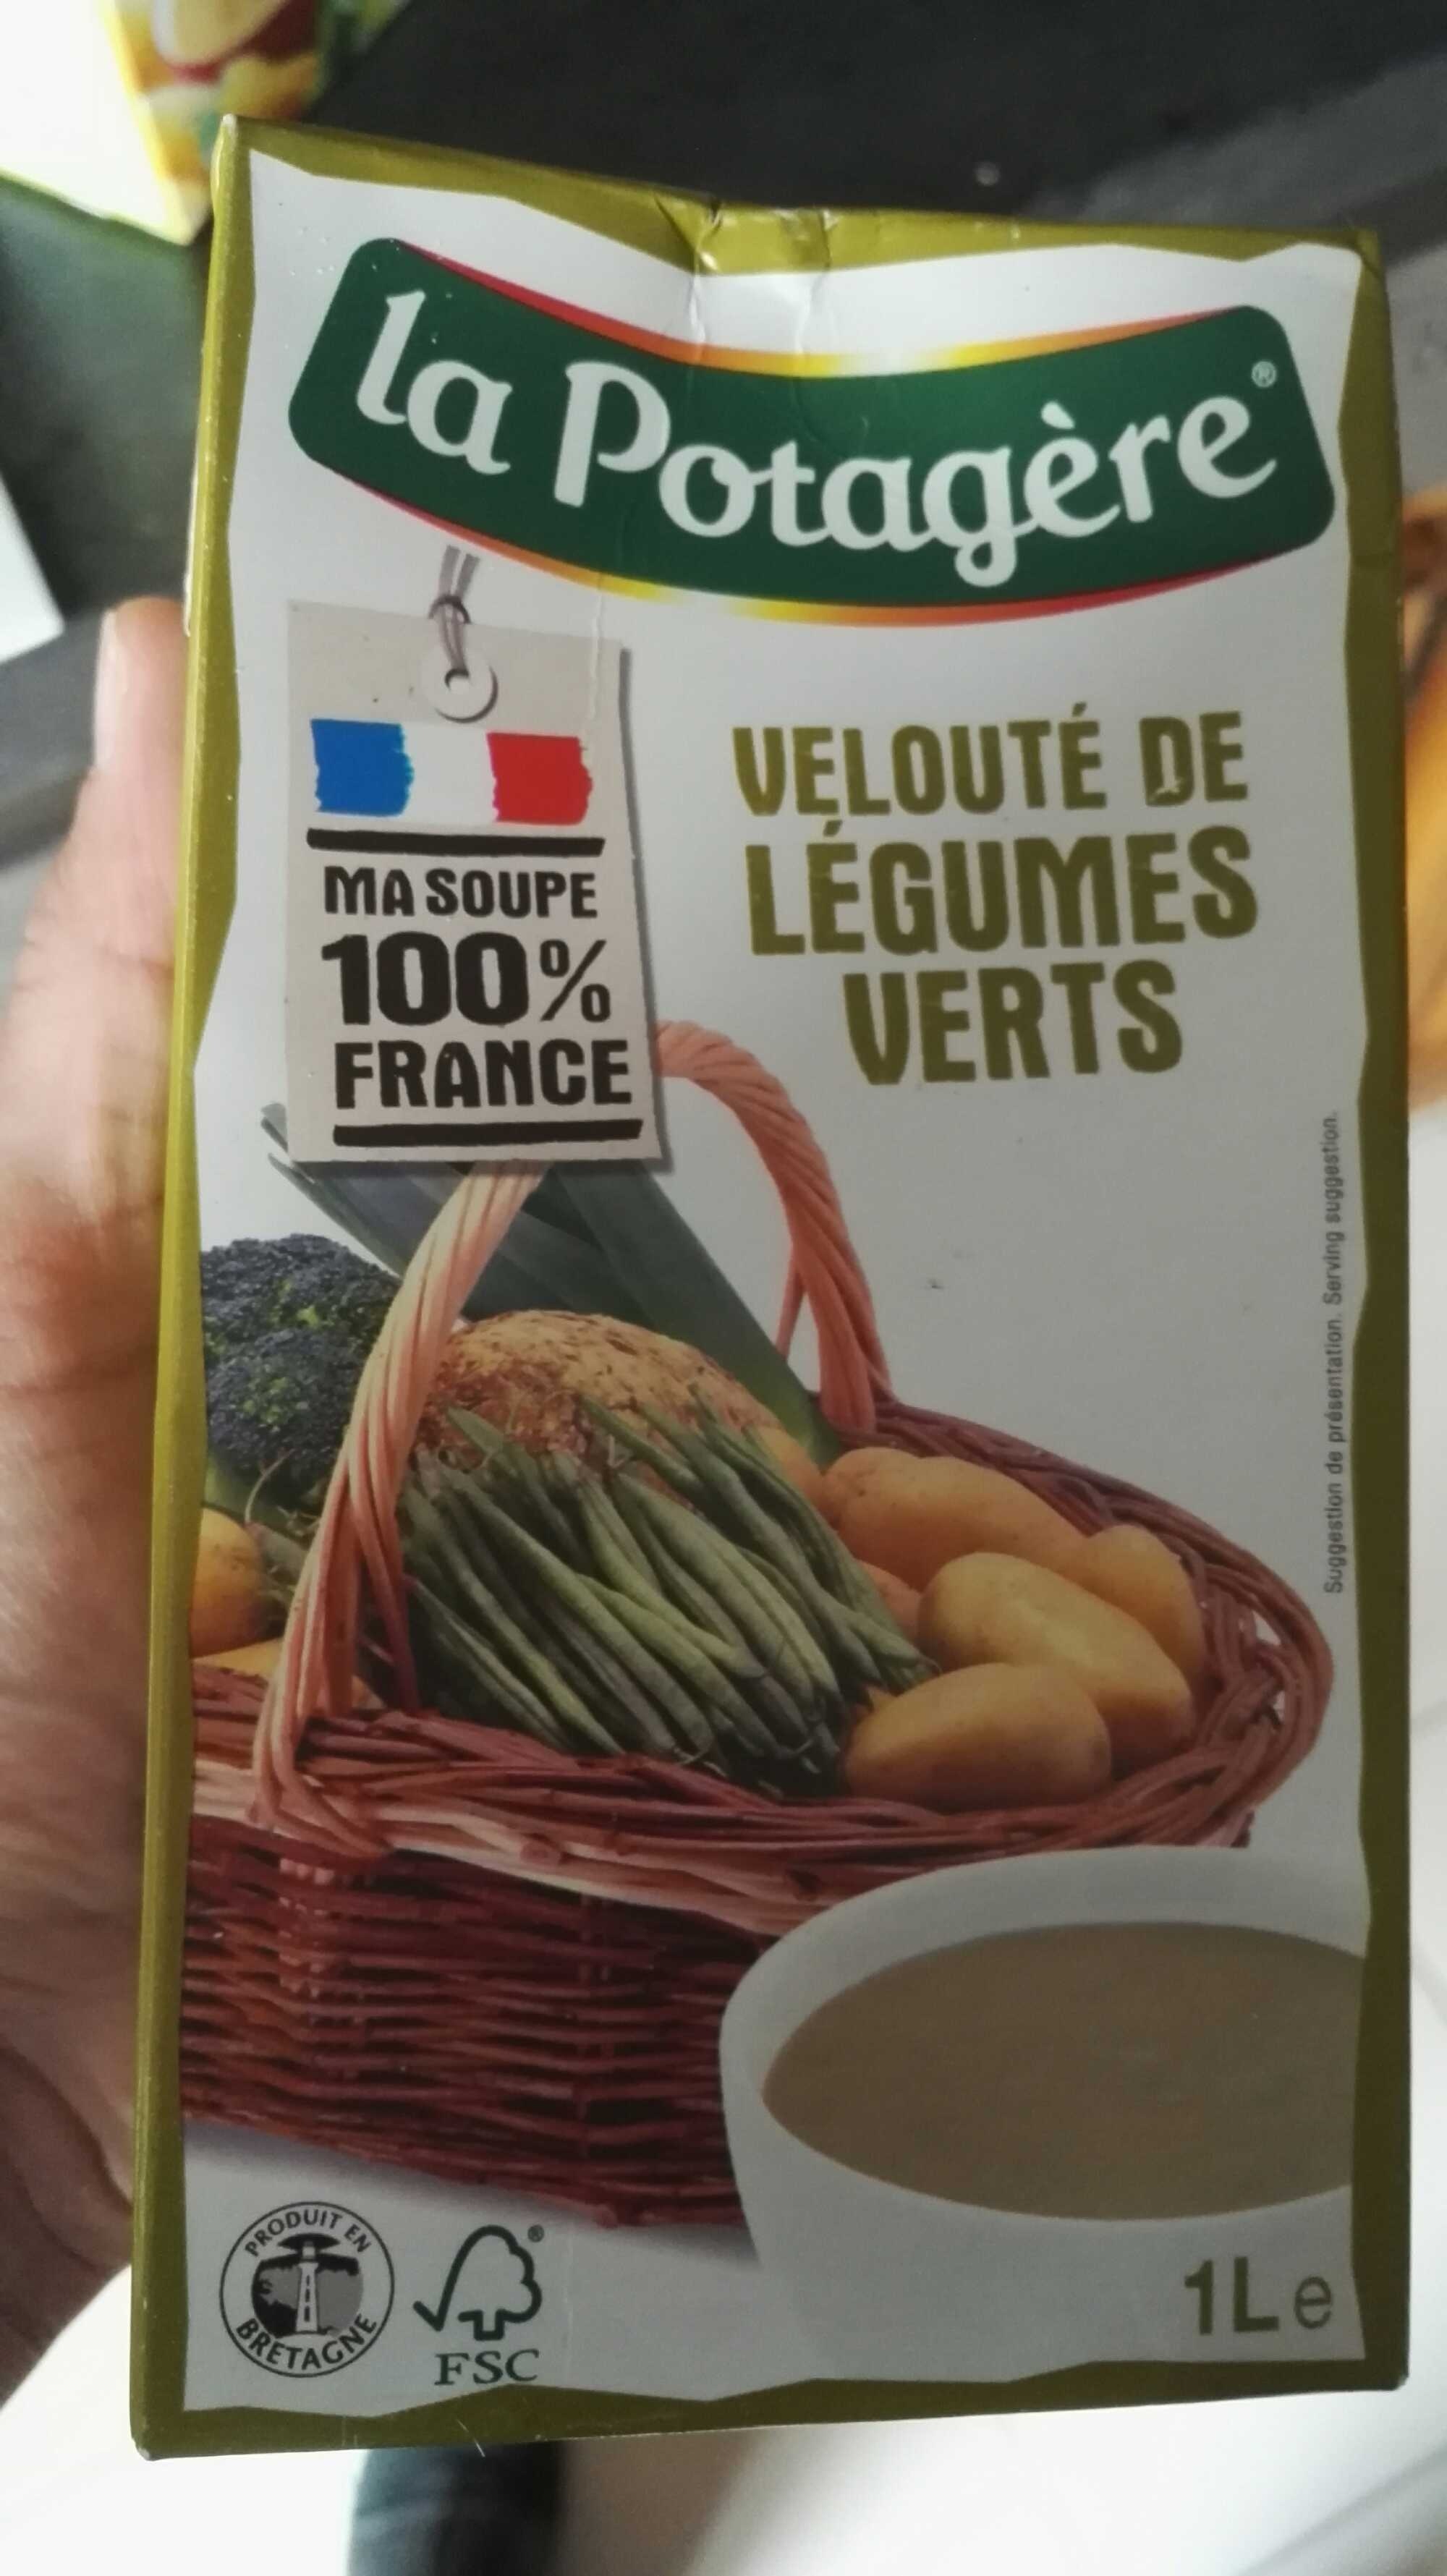 Velouté de légumes verts - Product - fr